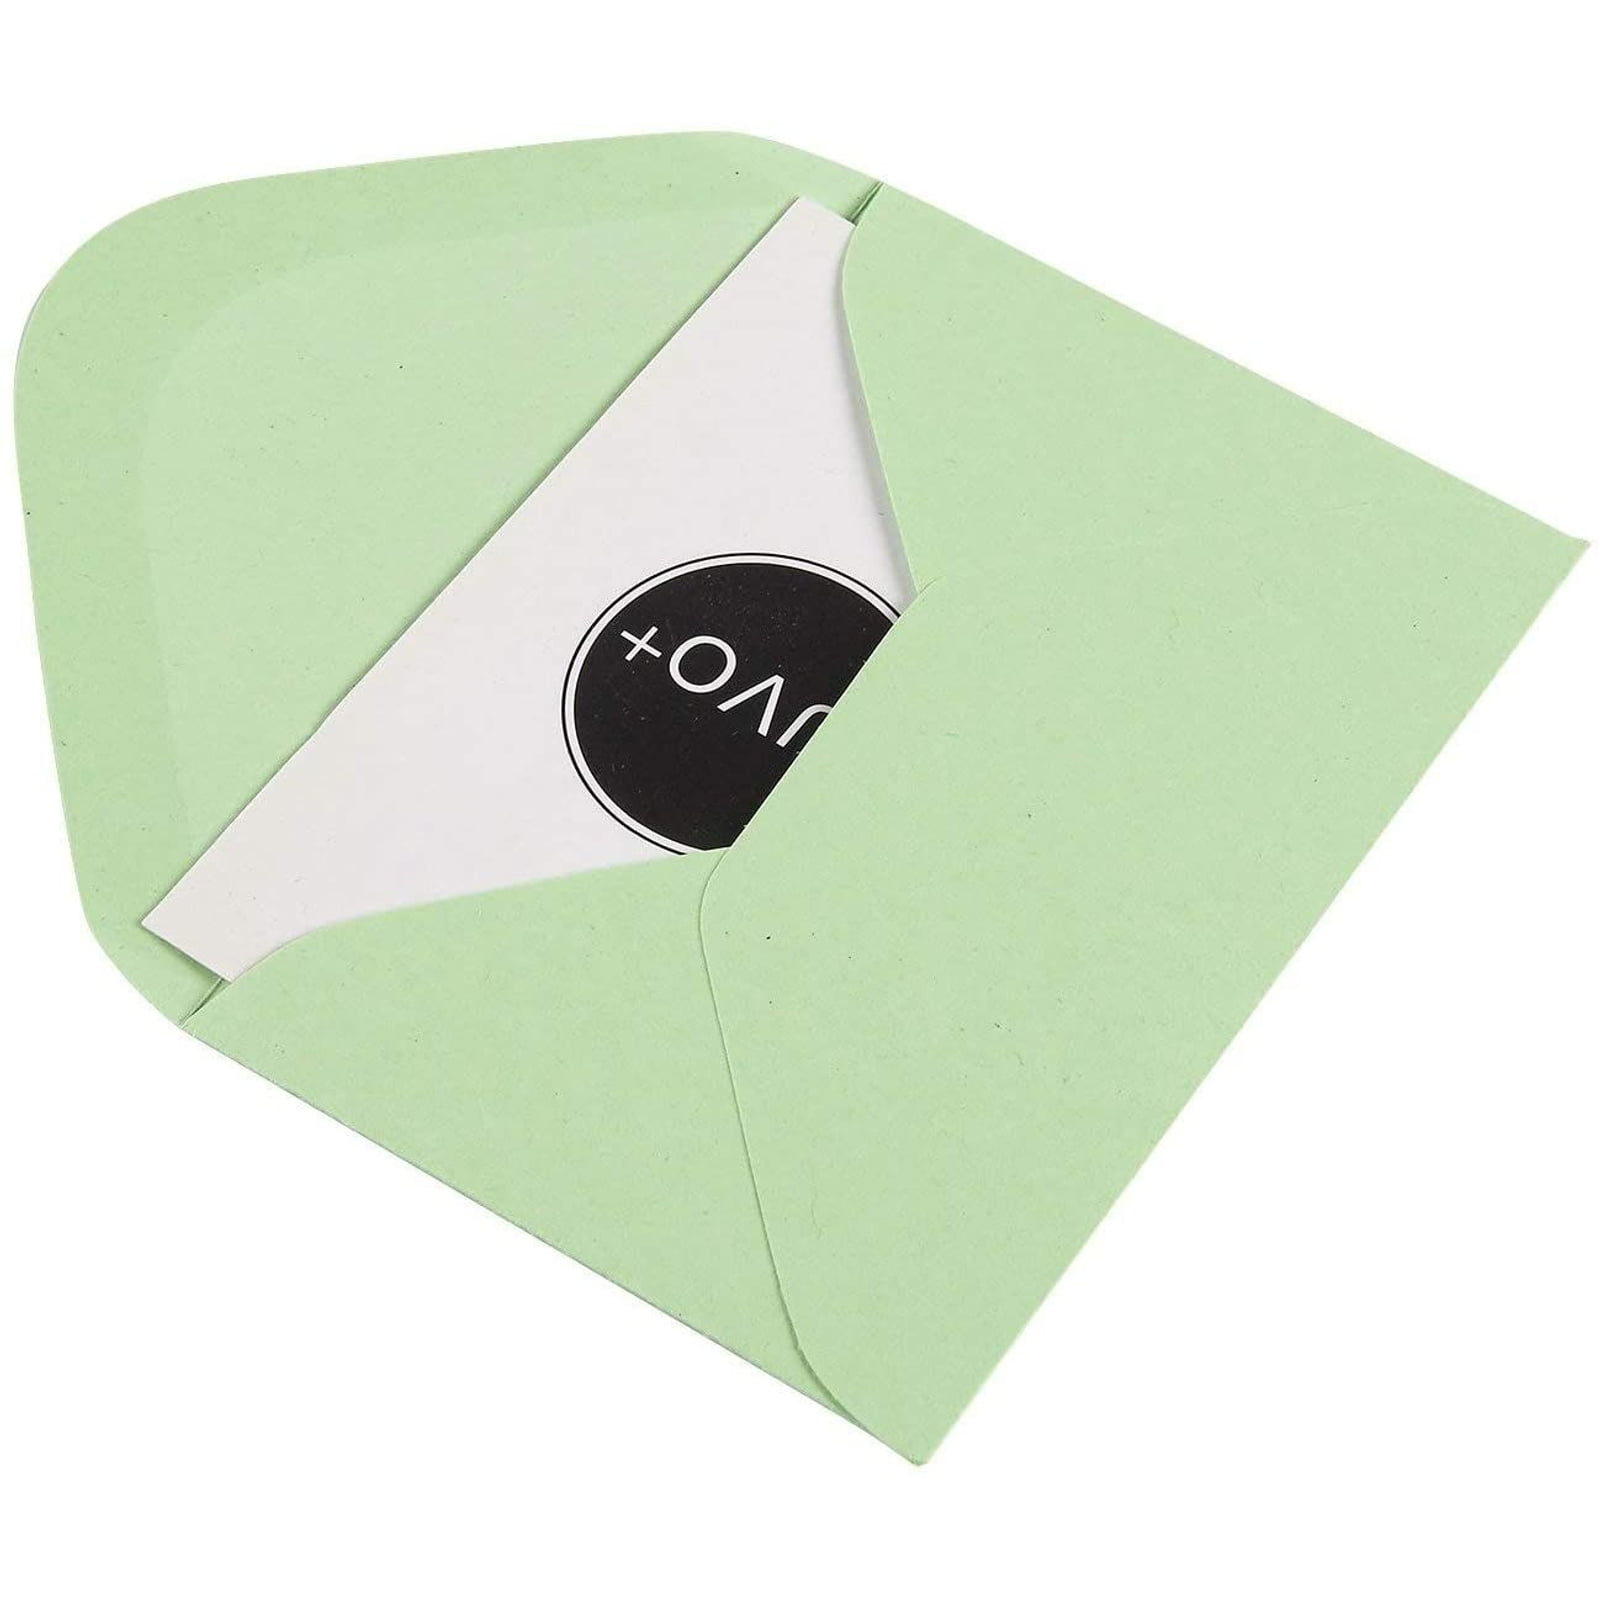 Bulk Tiny Envelopes Pocket Details about   100 Count Gift Card Envelopes Kraft Paper Business 